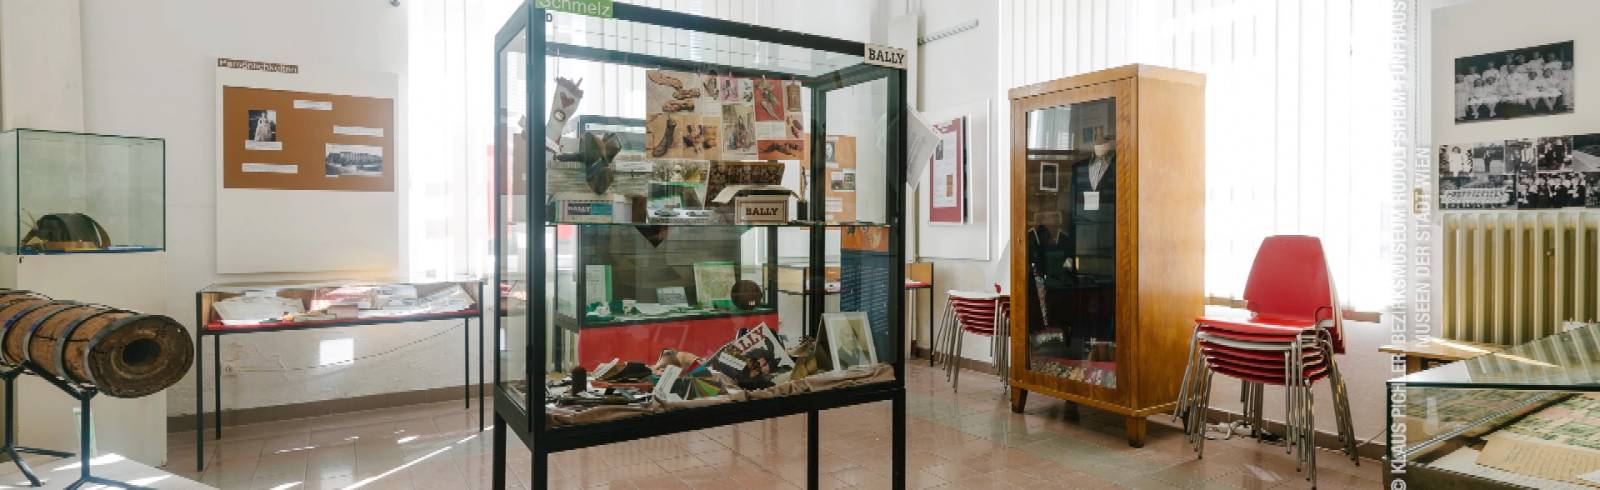 Bezirksflash: Bezirksmuseum öffnet wieder